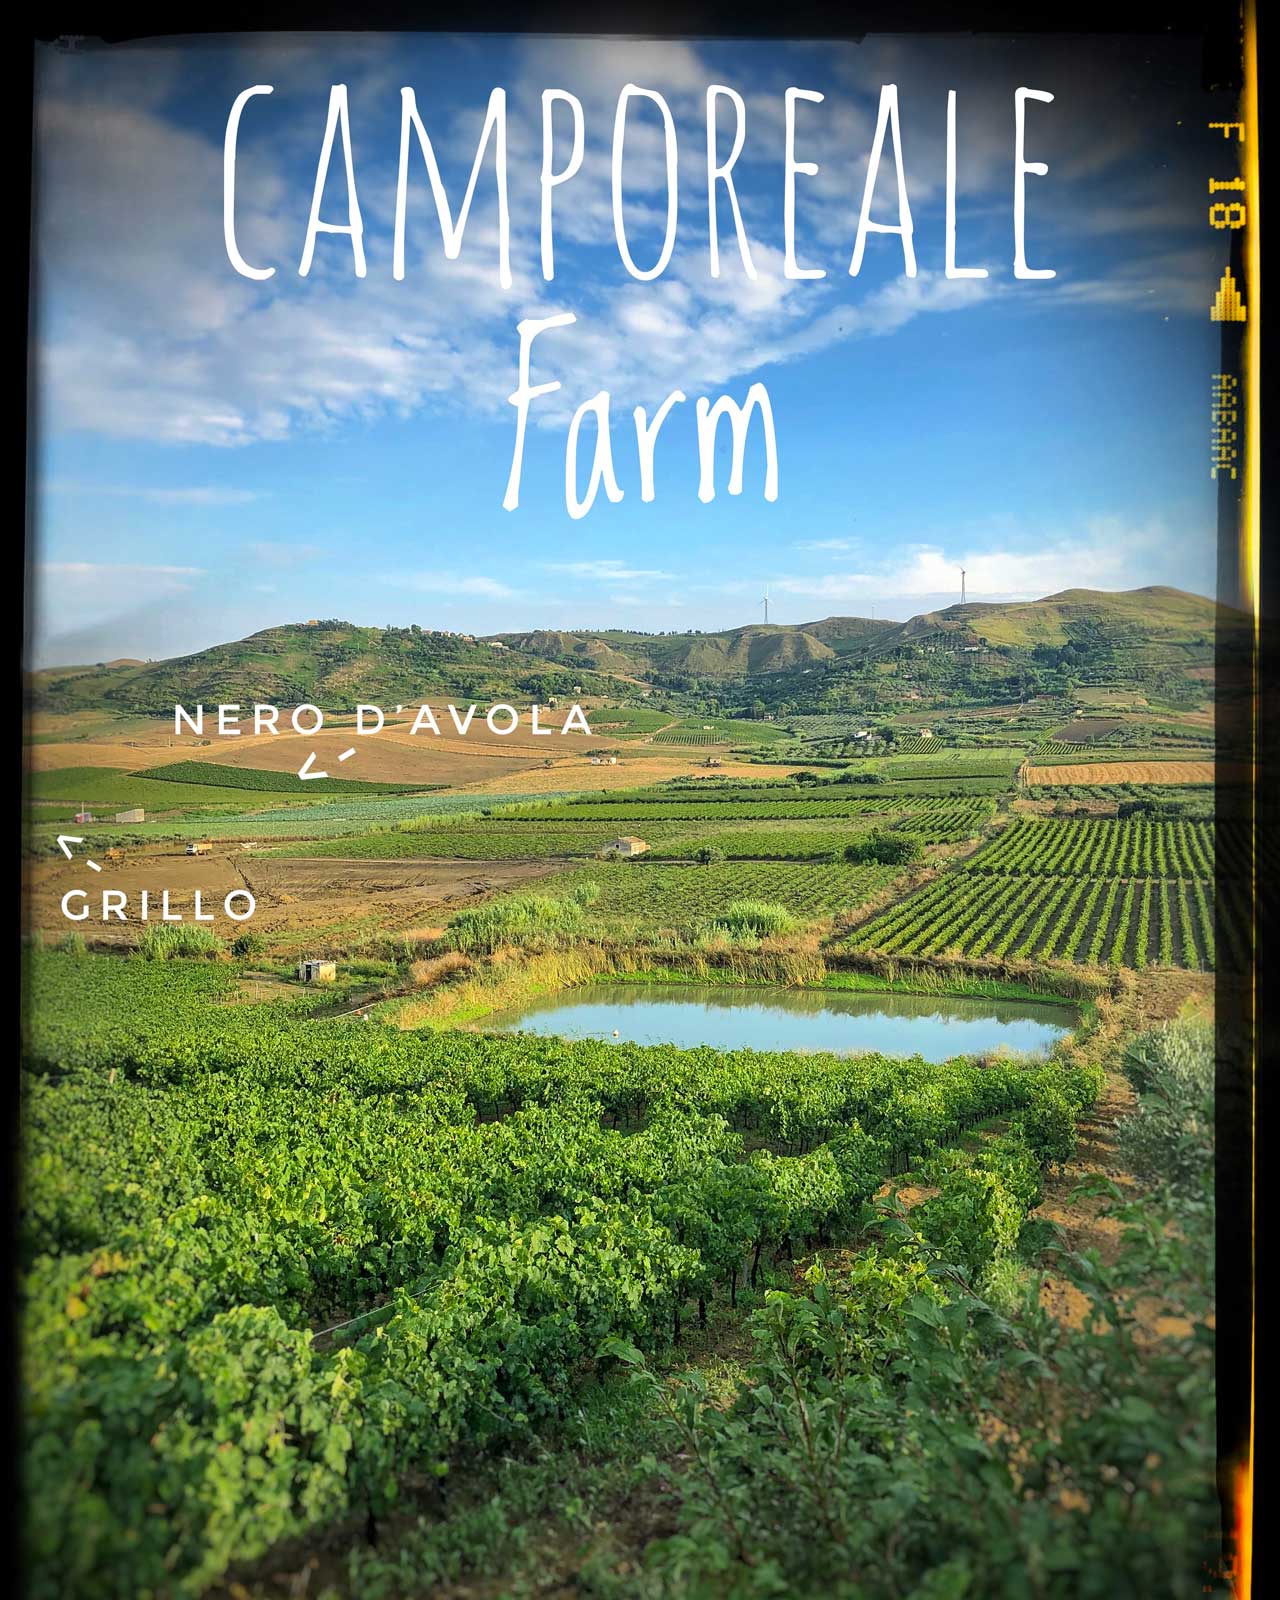 Vino naturale azienda agricola biologica - vino rosso e vino bianco - uve grillo e nero d'avola - Camporeale | Elios Sicilia | Italia                                